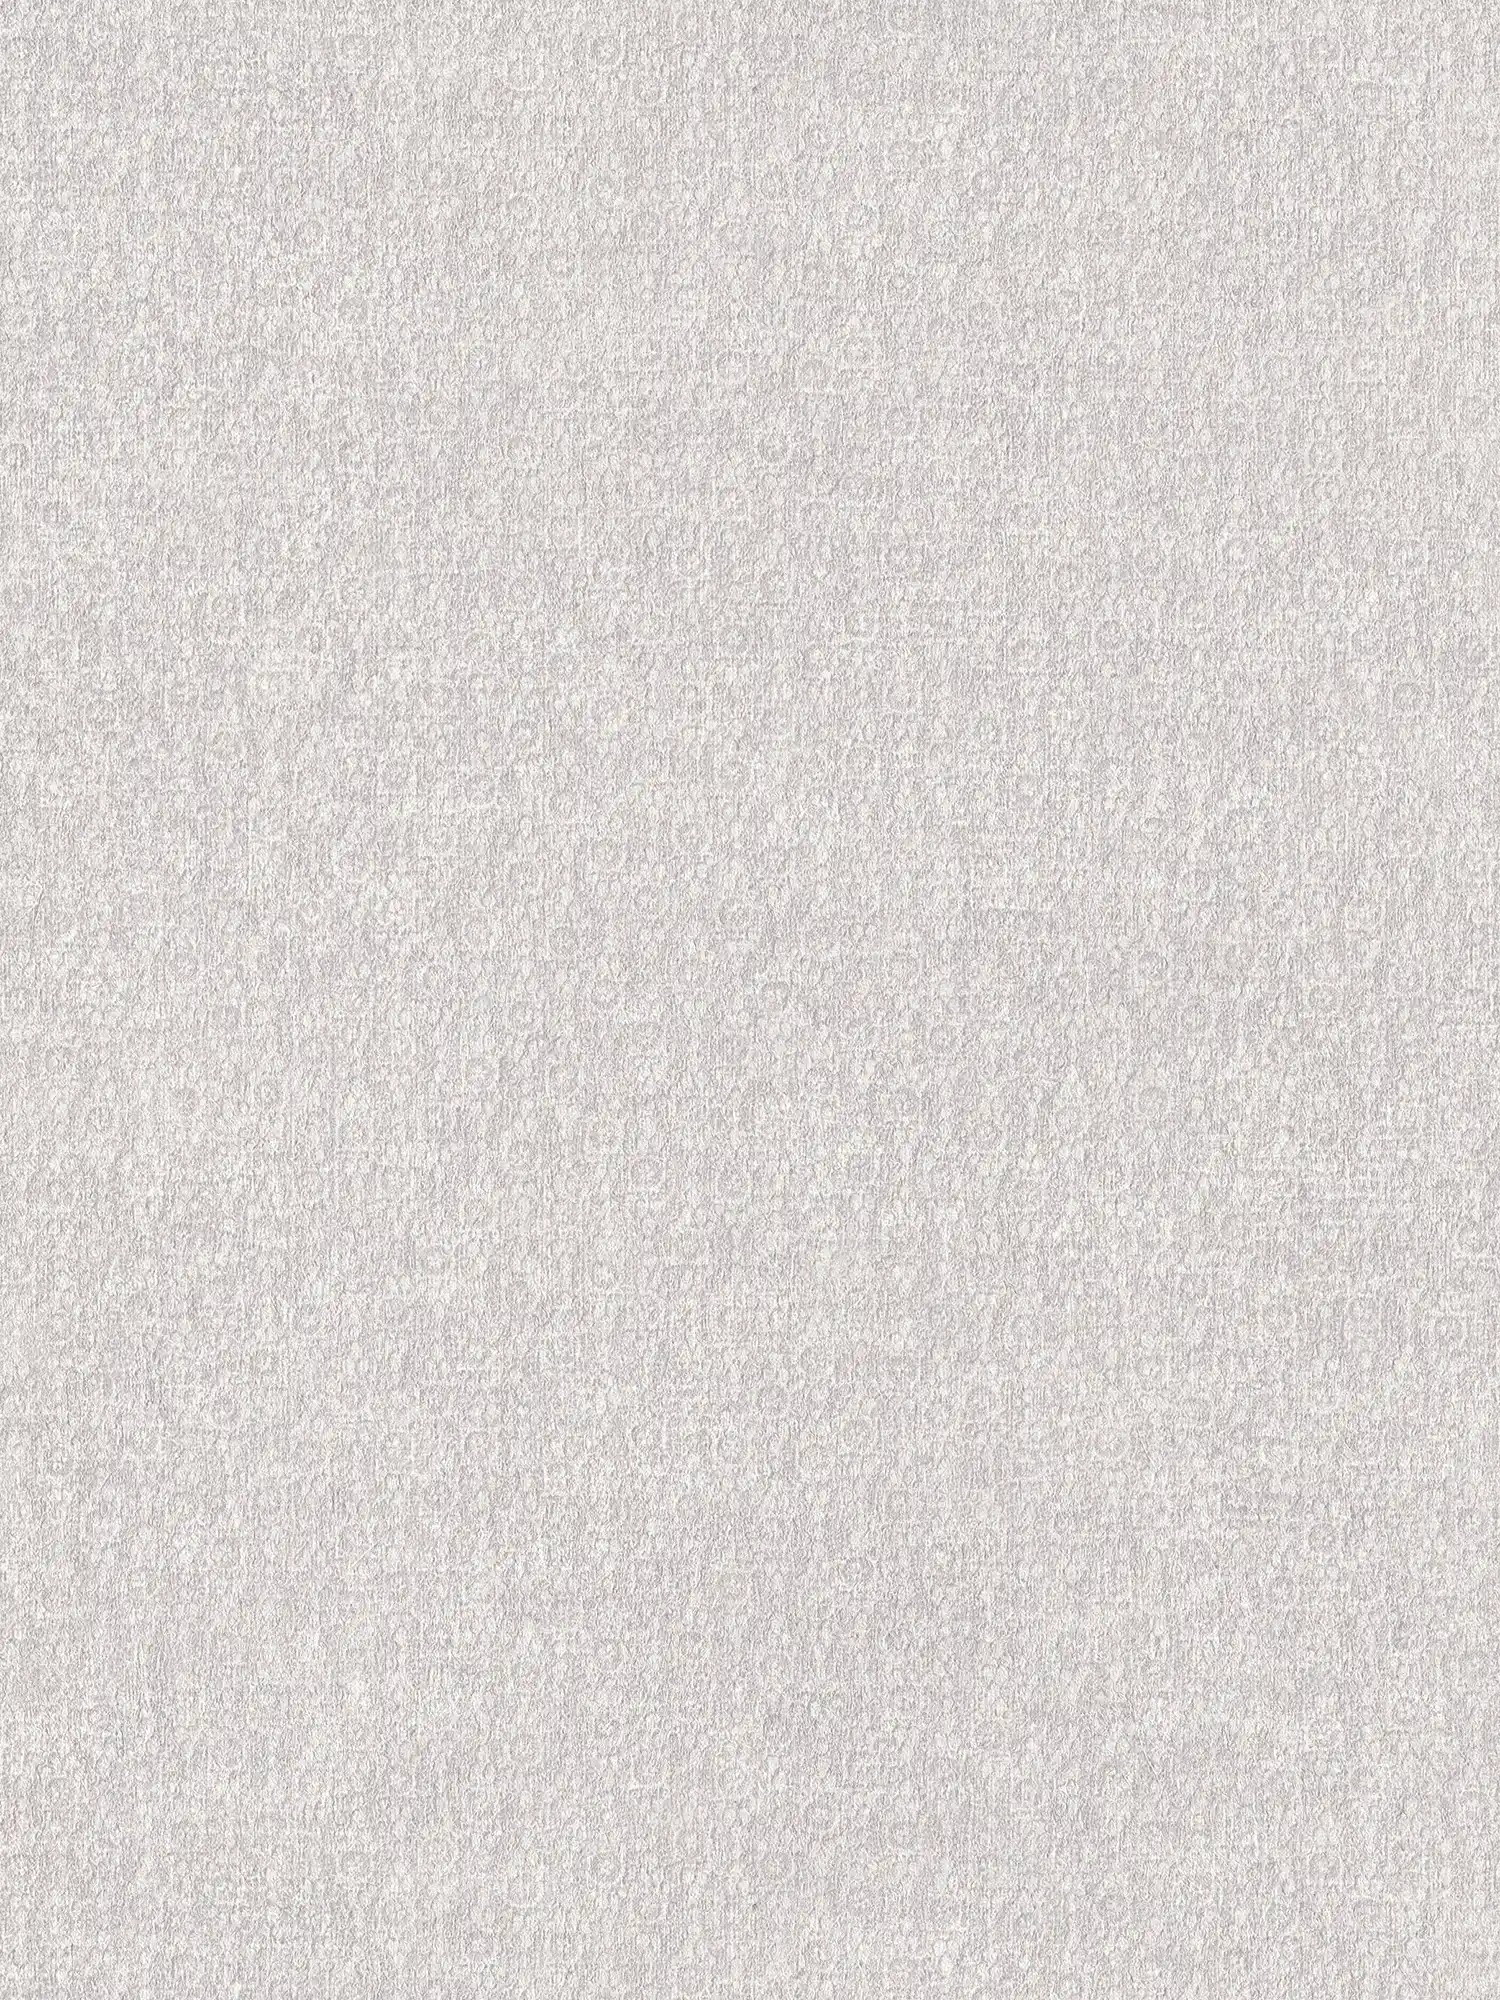 Papier peint intissé uni crème avec effet texturé
